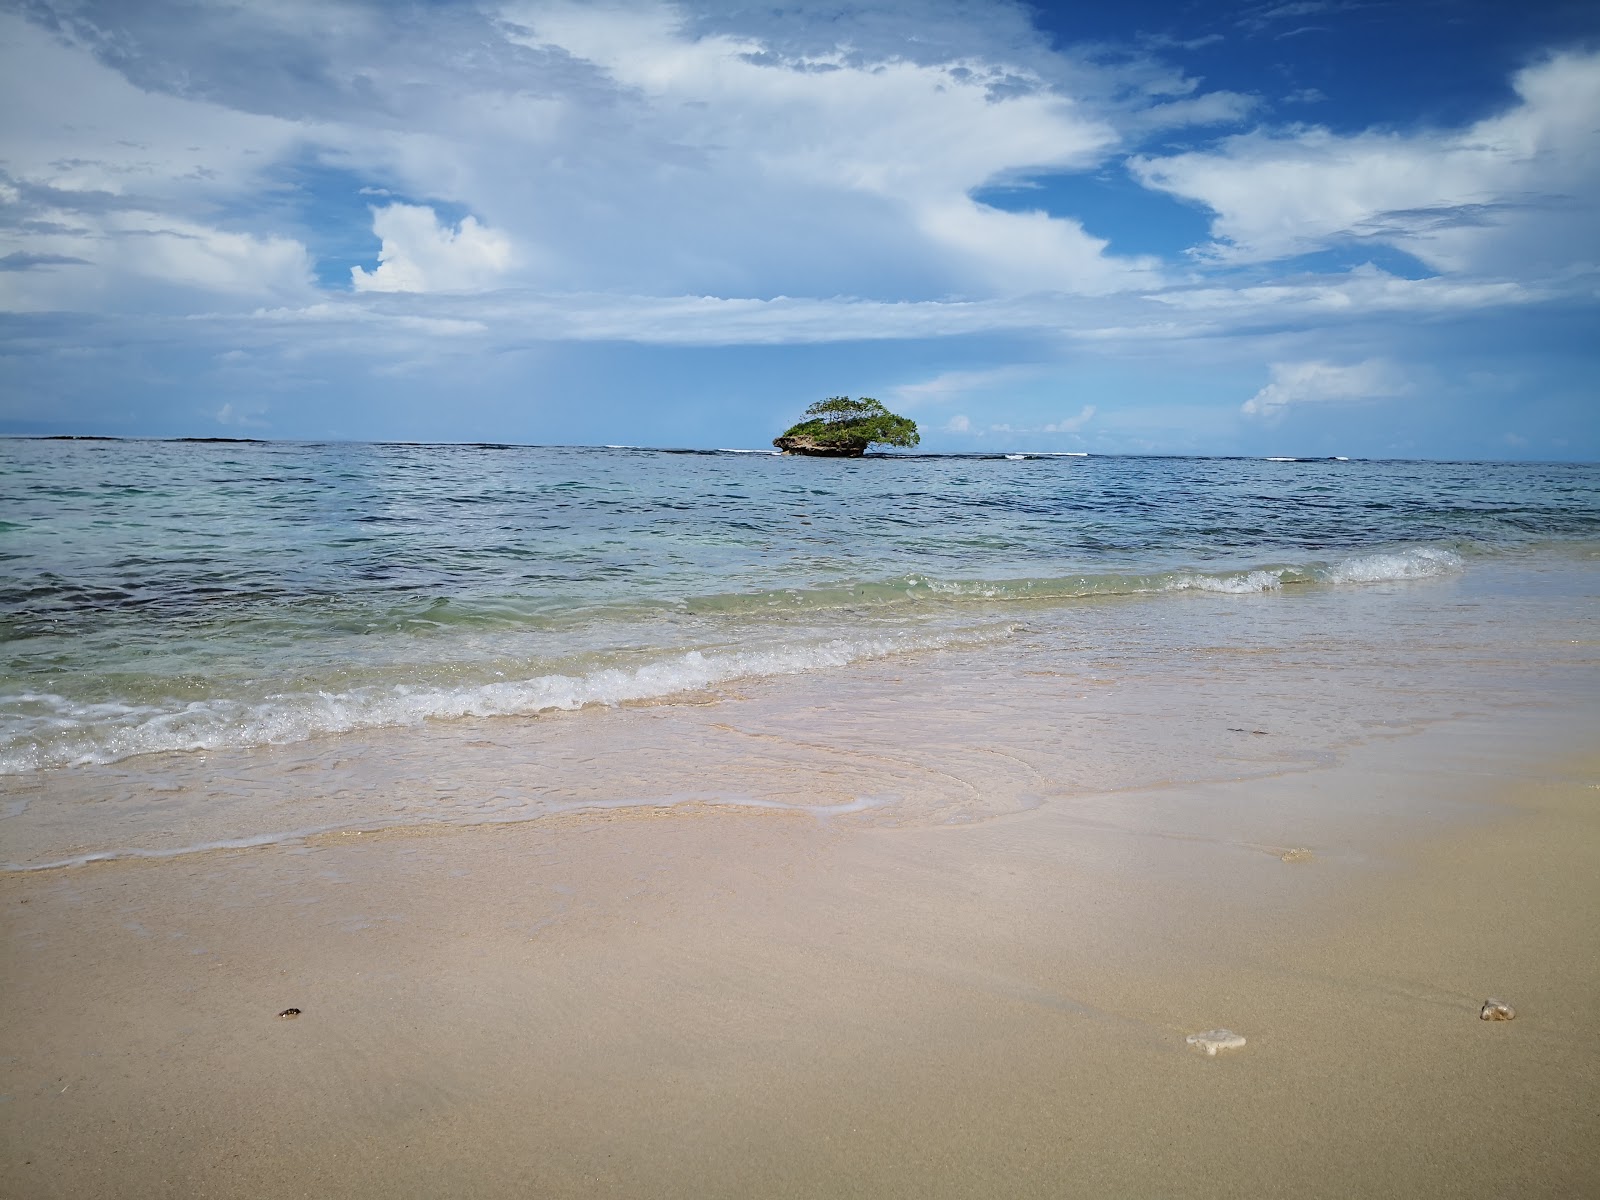 Fotografie cu Polo Beach - locul popular printre cunoscătorii de relaxare